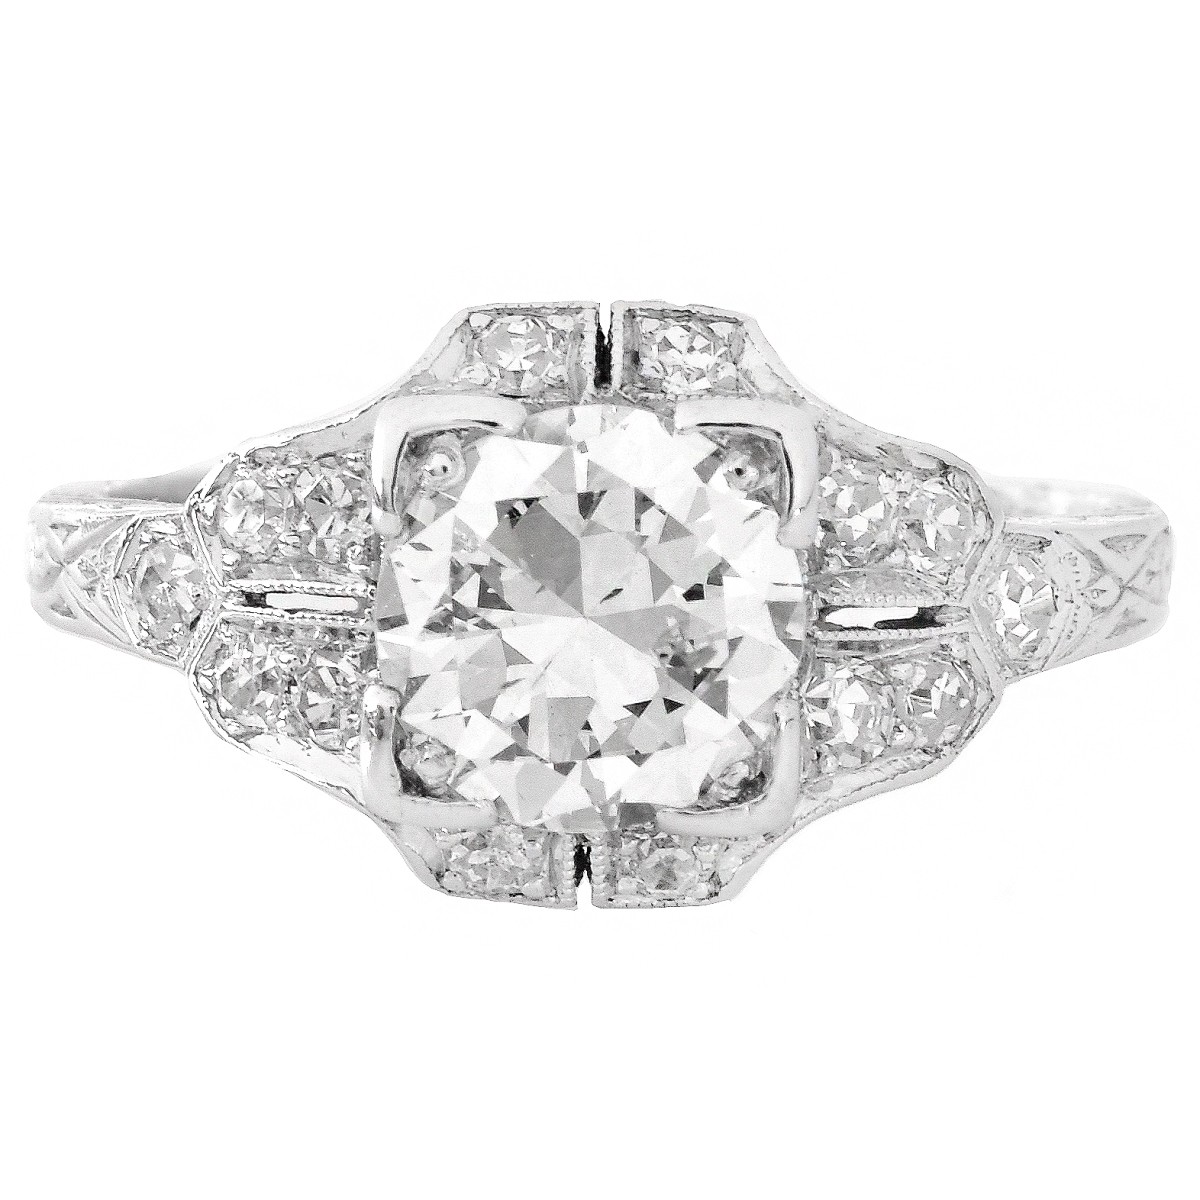 Art Deco 1.30 Carat TW Diamond and Platinum Ring - Image 2 of 5